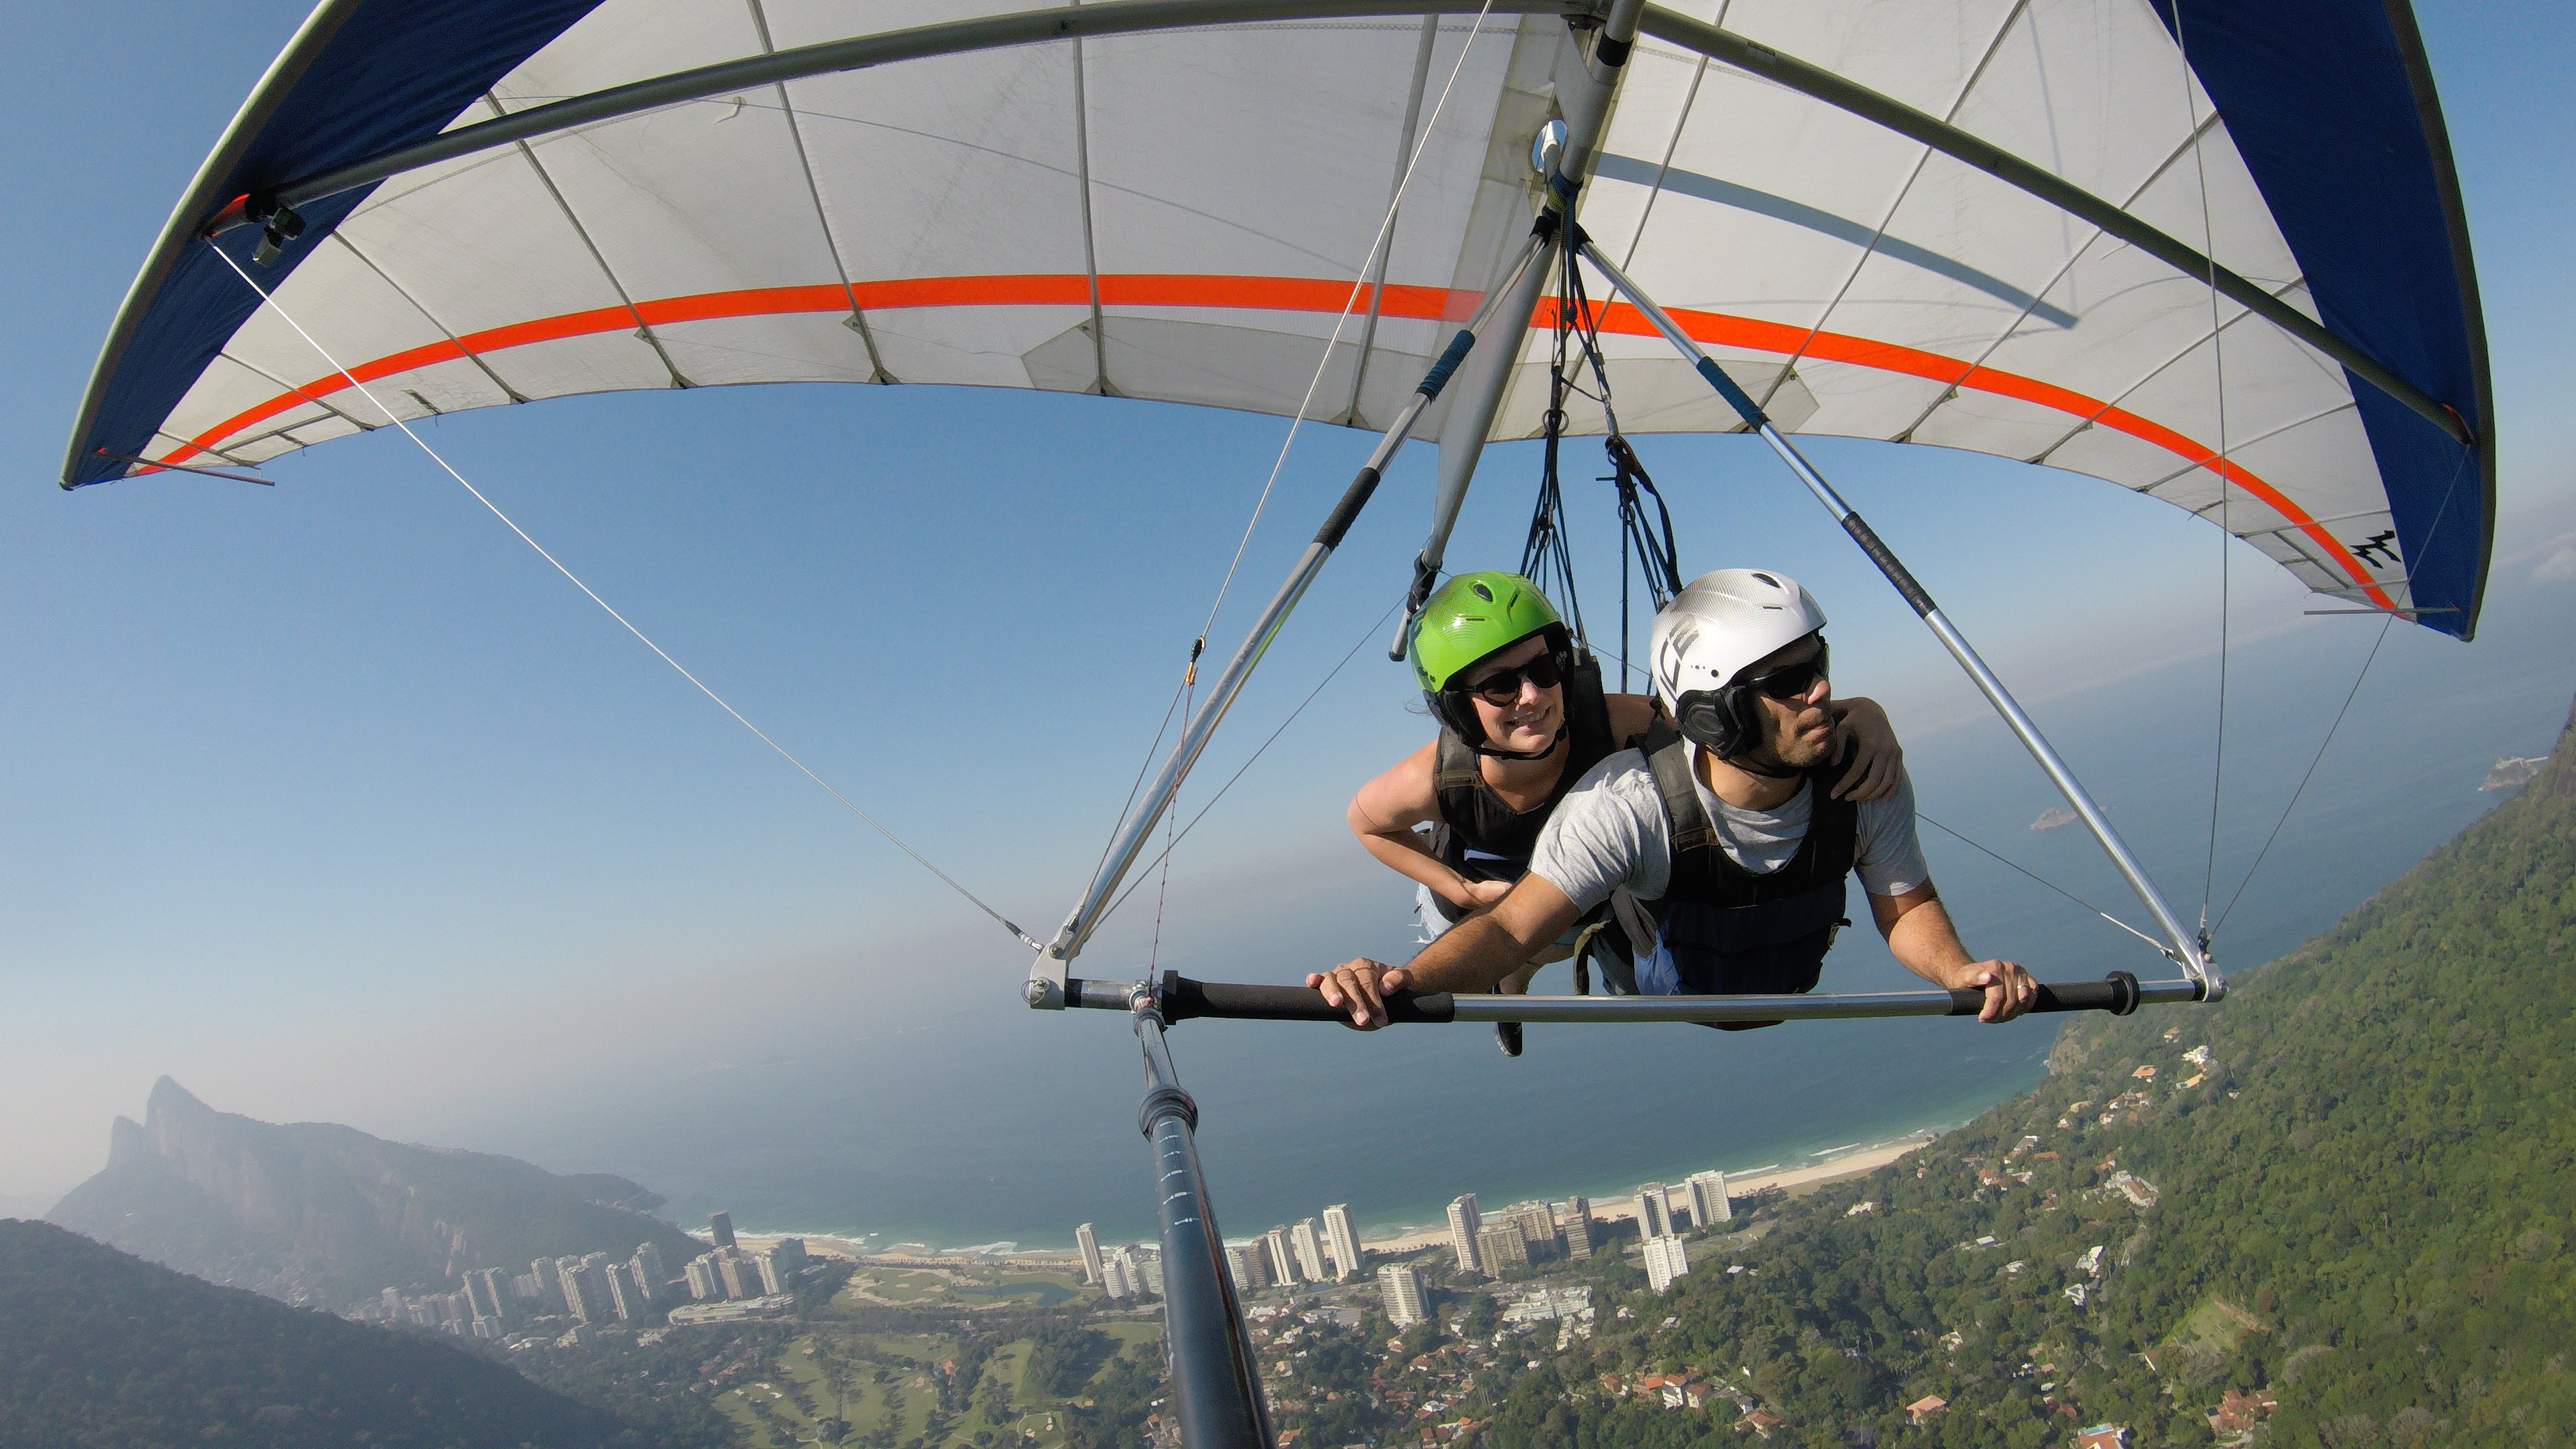 Hang Gliding: Tandem, Hang gliders, Rio de Janeiro, A triangle control frame. 3840x2160 4K Background.